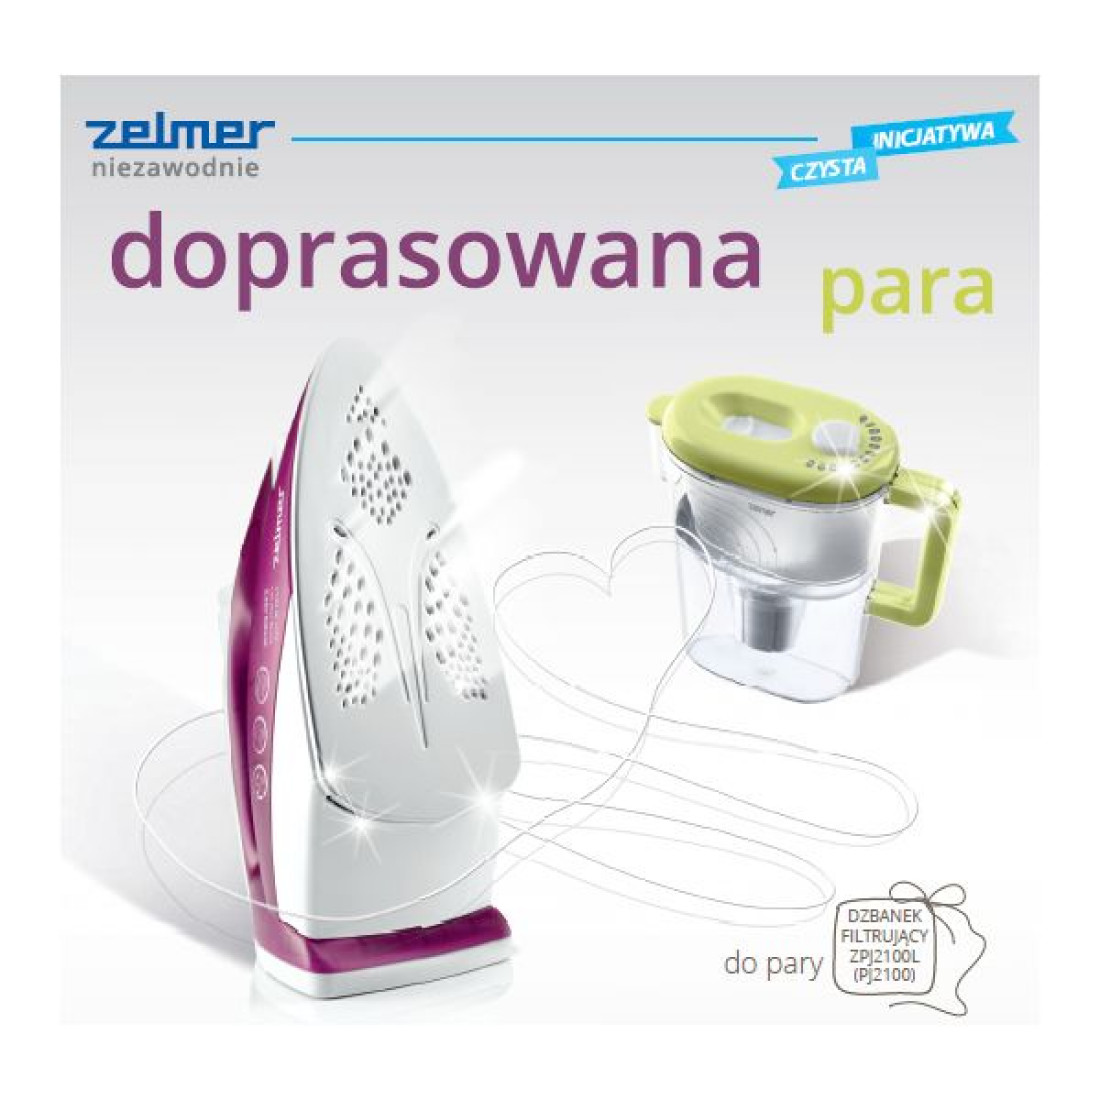 "Doprasowana para" - akcja promocyjna marki Zelmer trwa do 30.09.2014